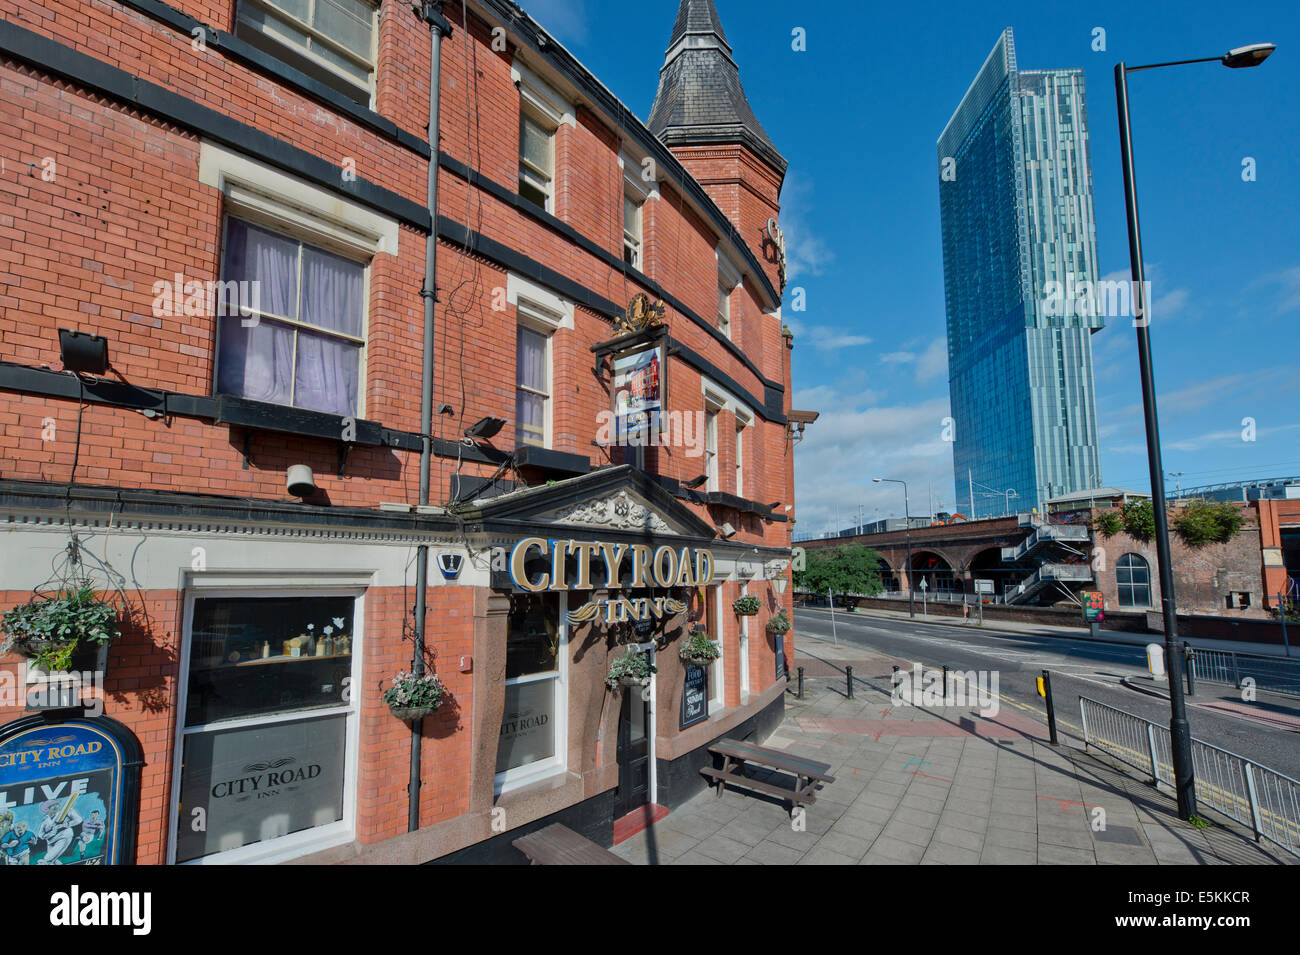 La Ville Road Inn City pub anglais traditionnel, situé sur Albion Street, Manchester, Royaume-Uni. Banque D'Images